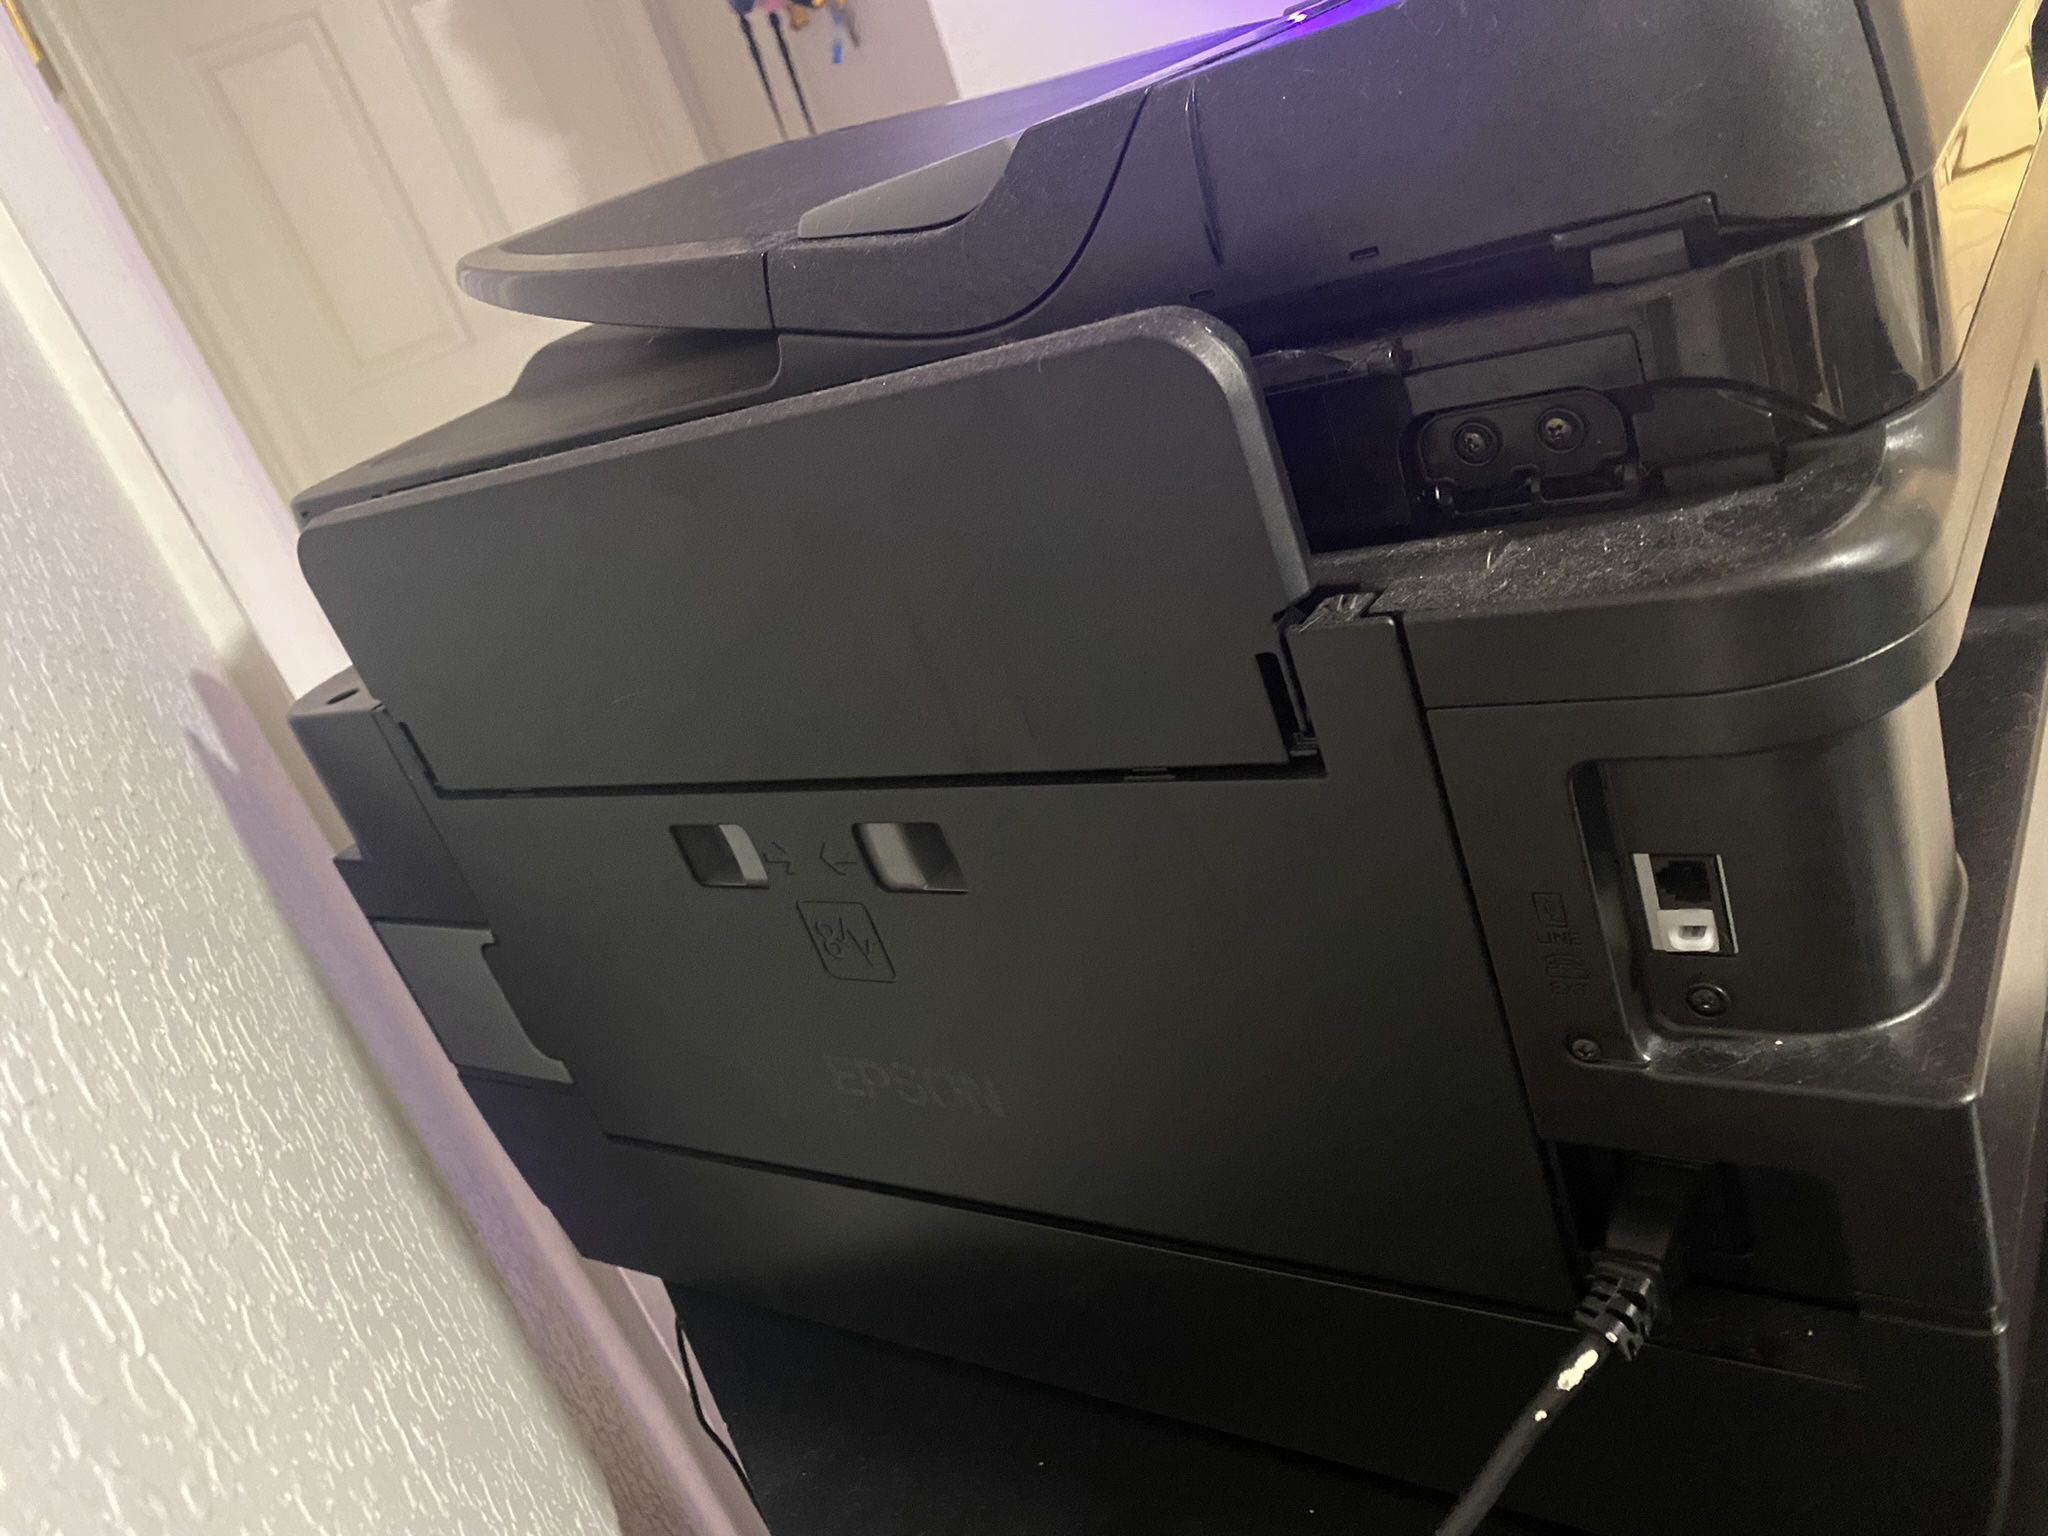 Printer, Scanner, Fax  Machine 